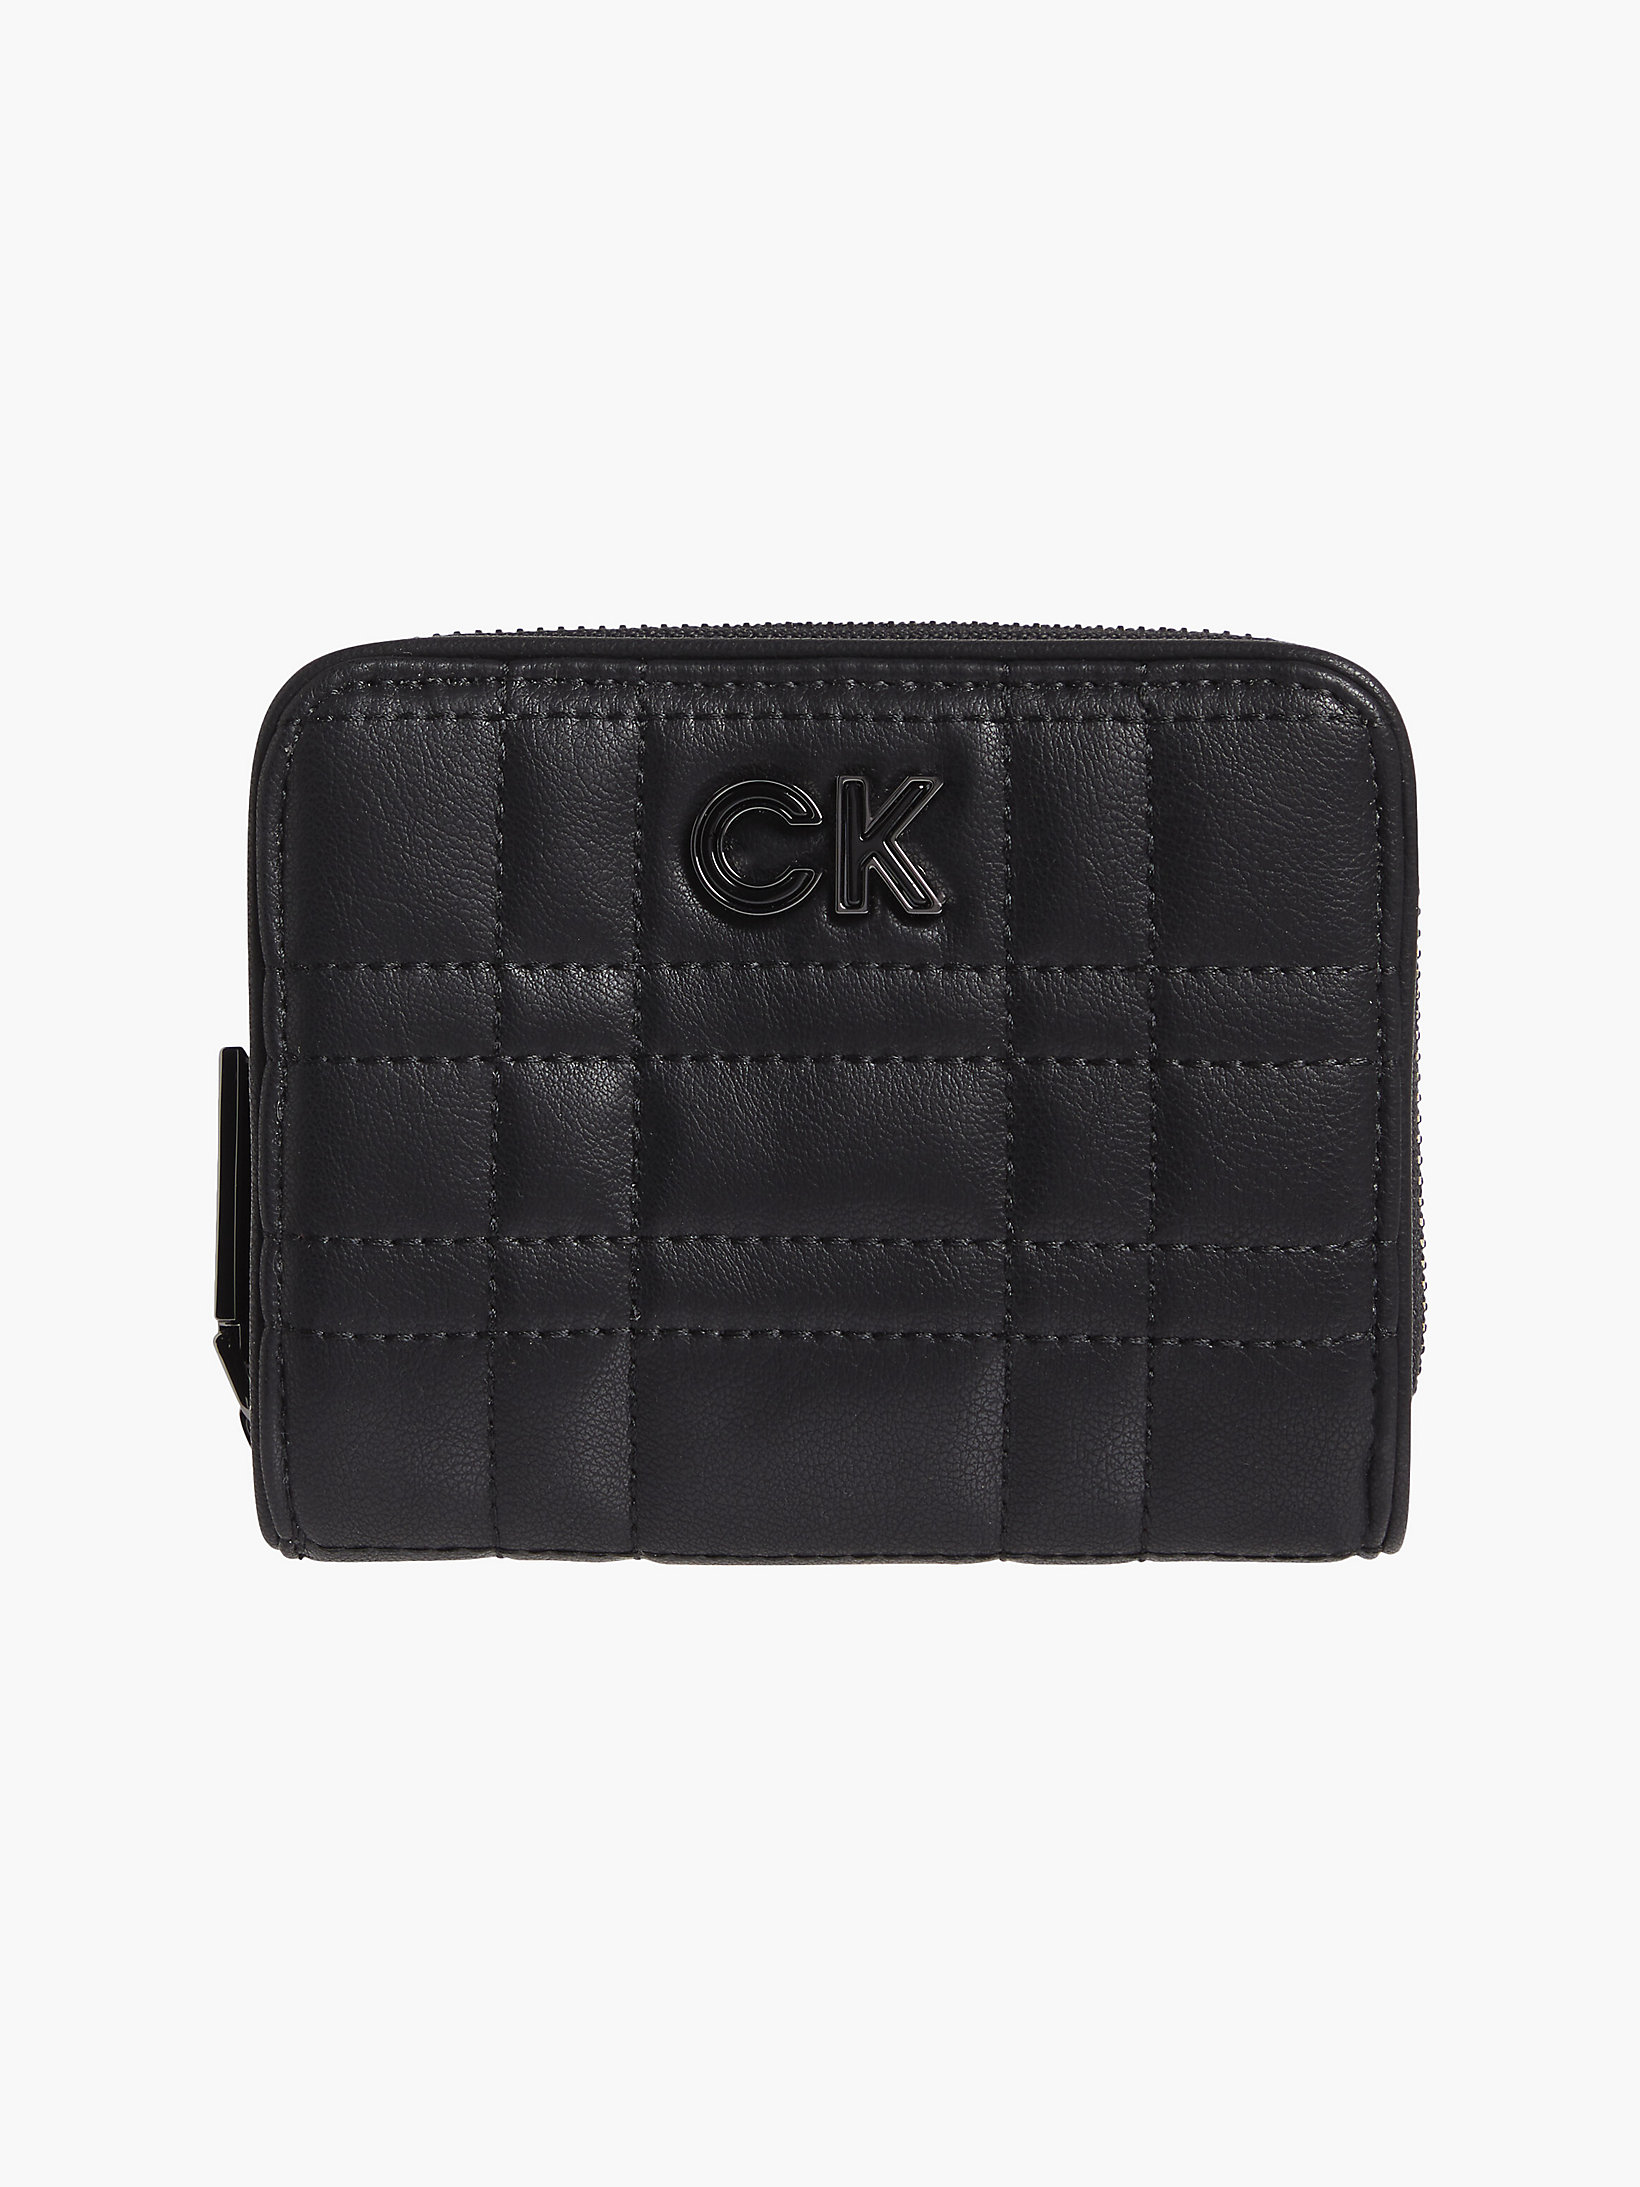 CK Black Gestepptes Portemonnaie Mit Rundum-Reißverschluss Aus Recyceltem Material undefined Damen Calvin Klein